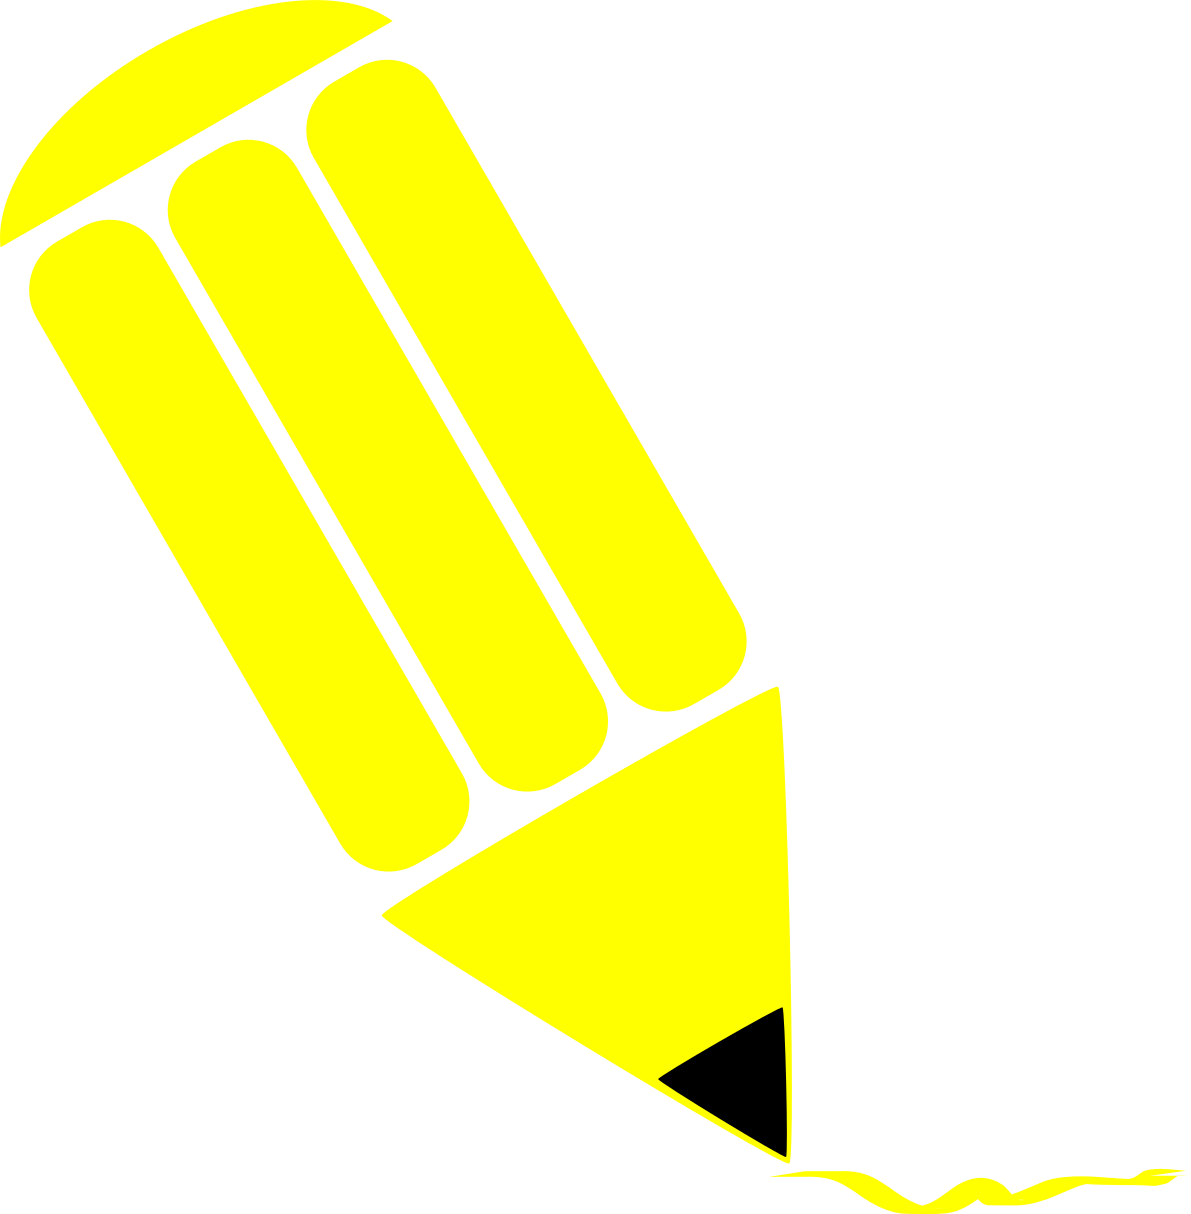 Pencil stylized yellow